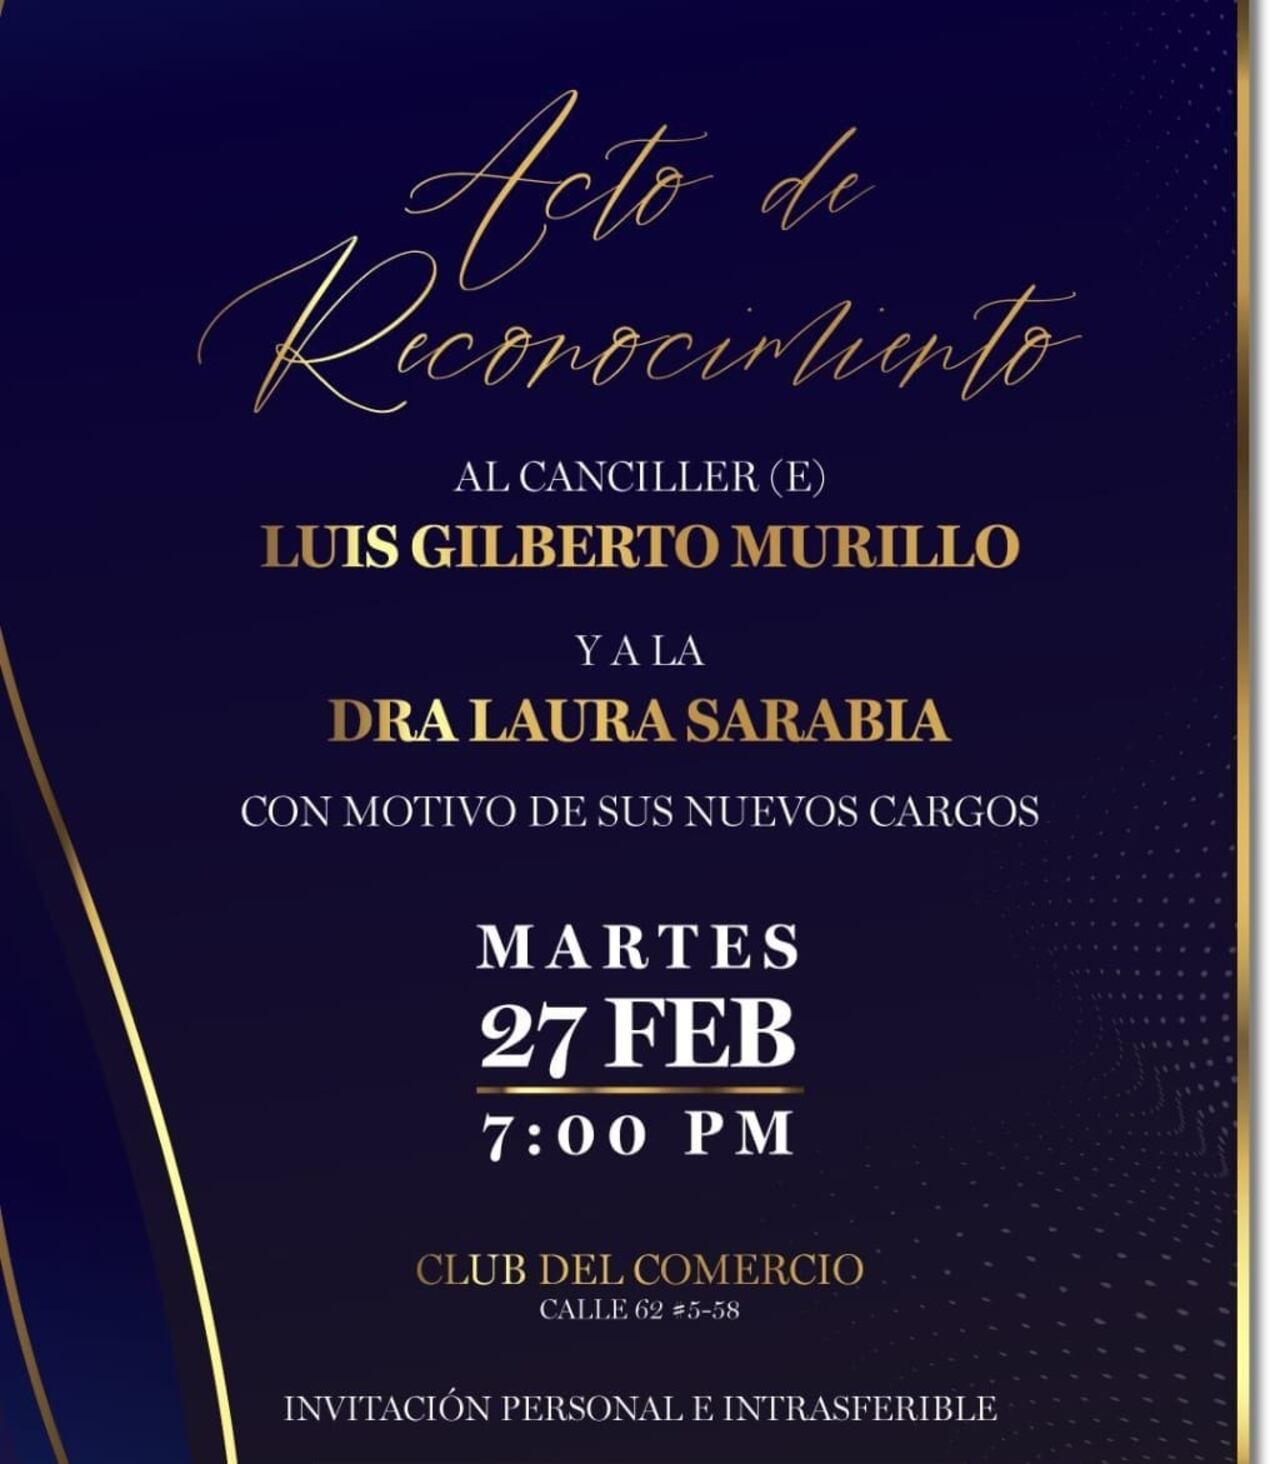 Invitación a un acto de reconocimiento a Laura Sarabia y Luis Gilberto Murillo.